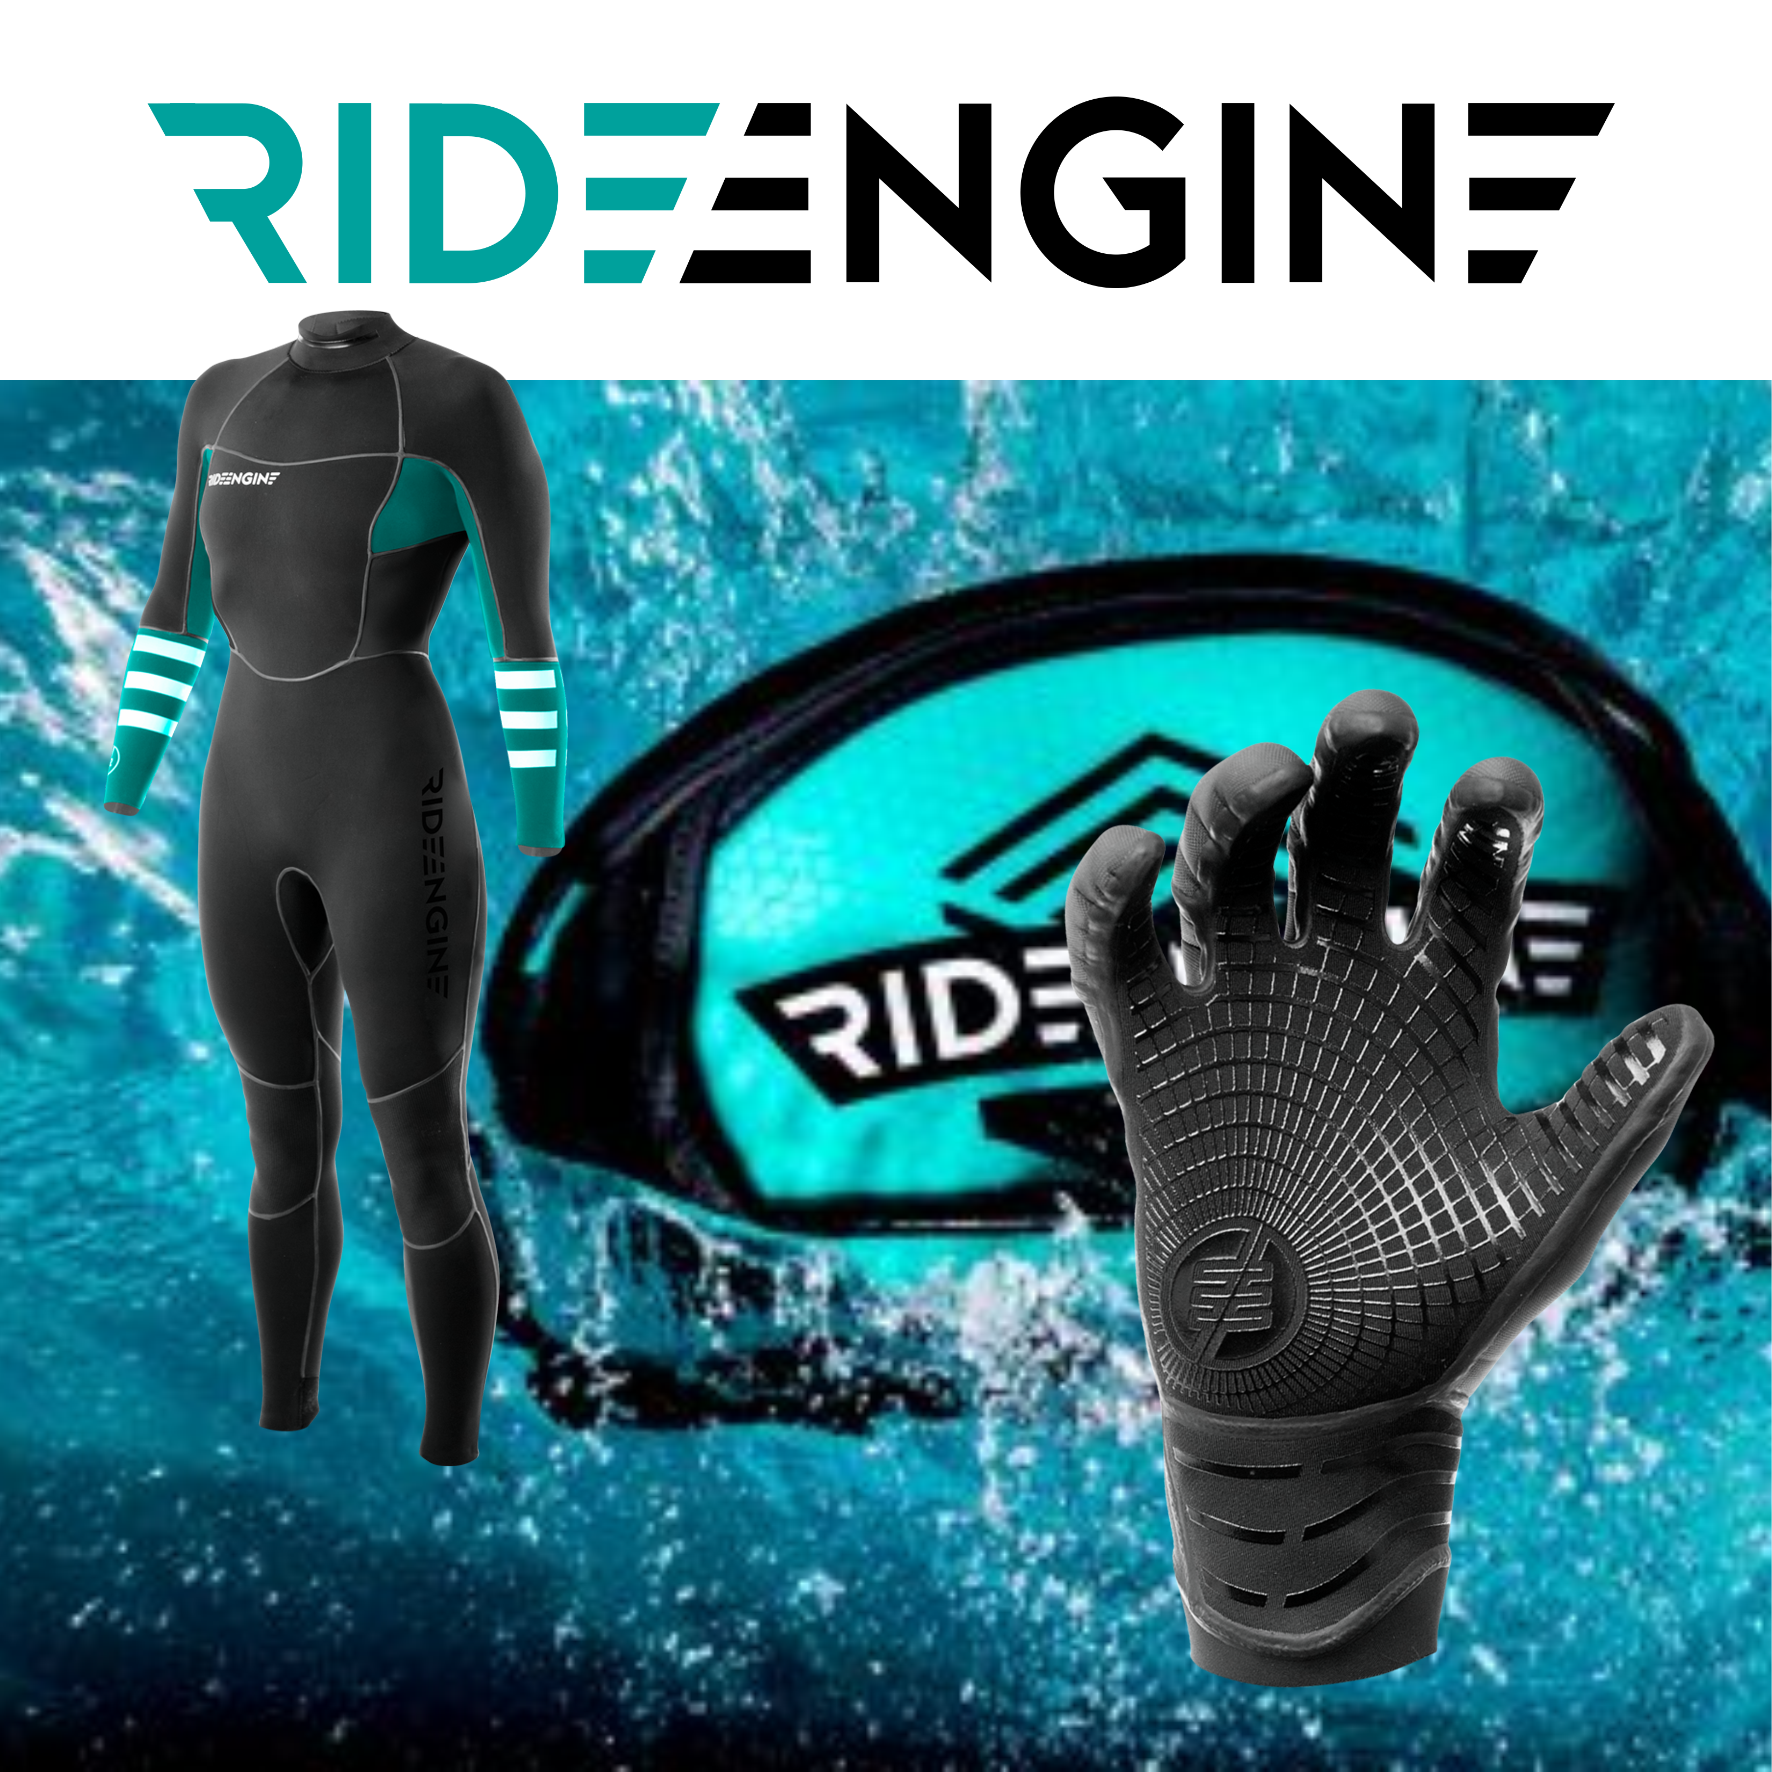 RideEngine: on-line!